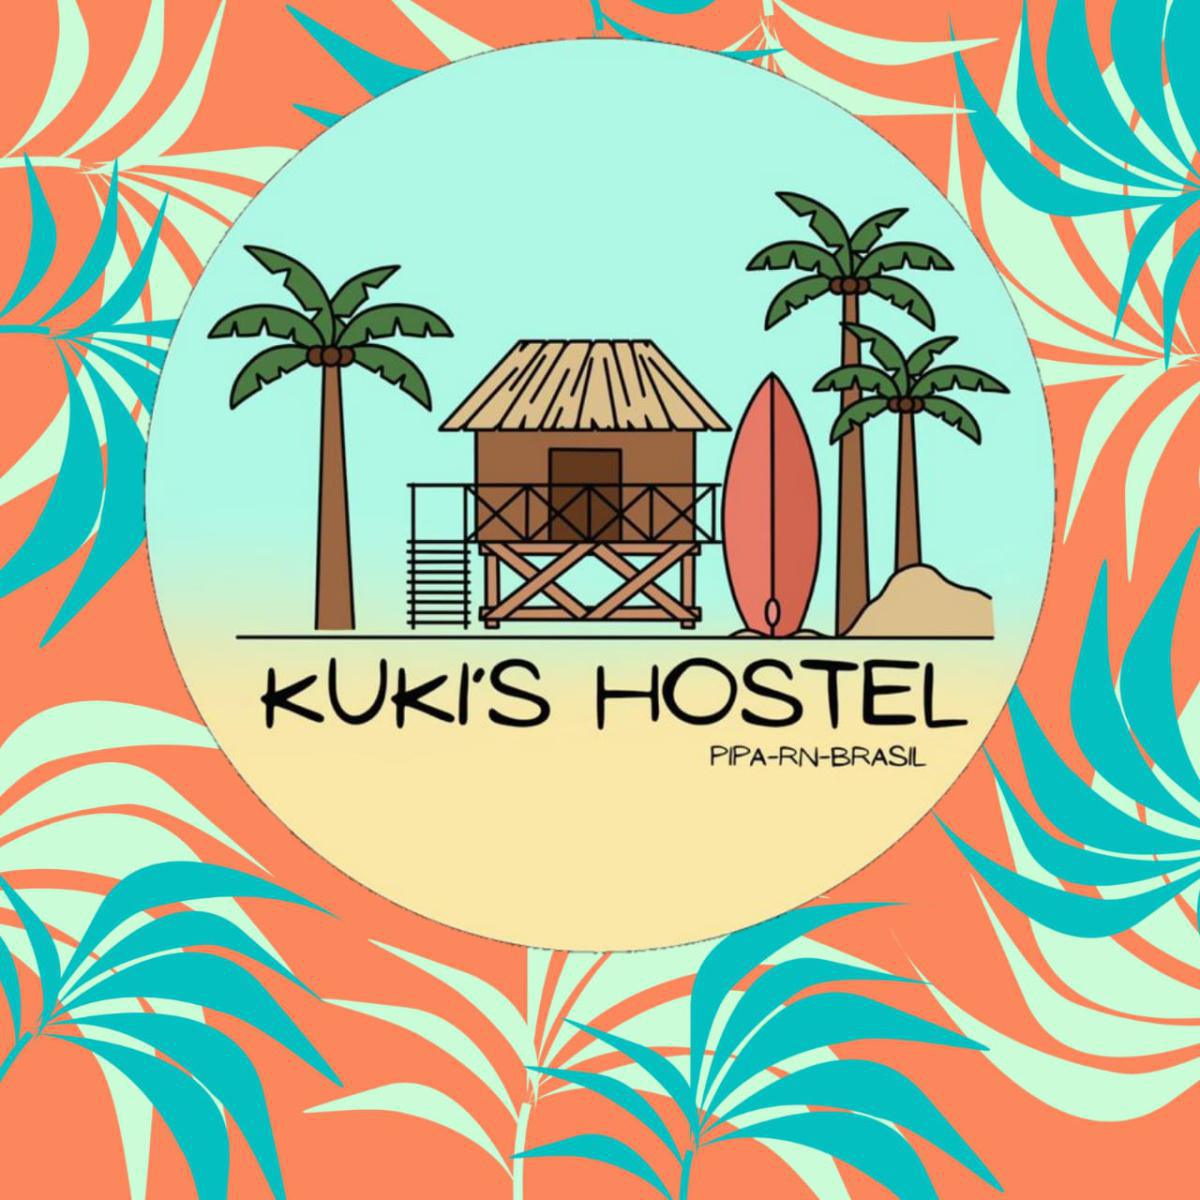 Kuki's Hostel